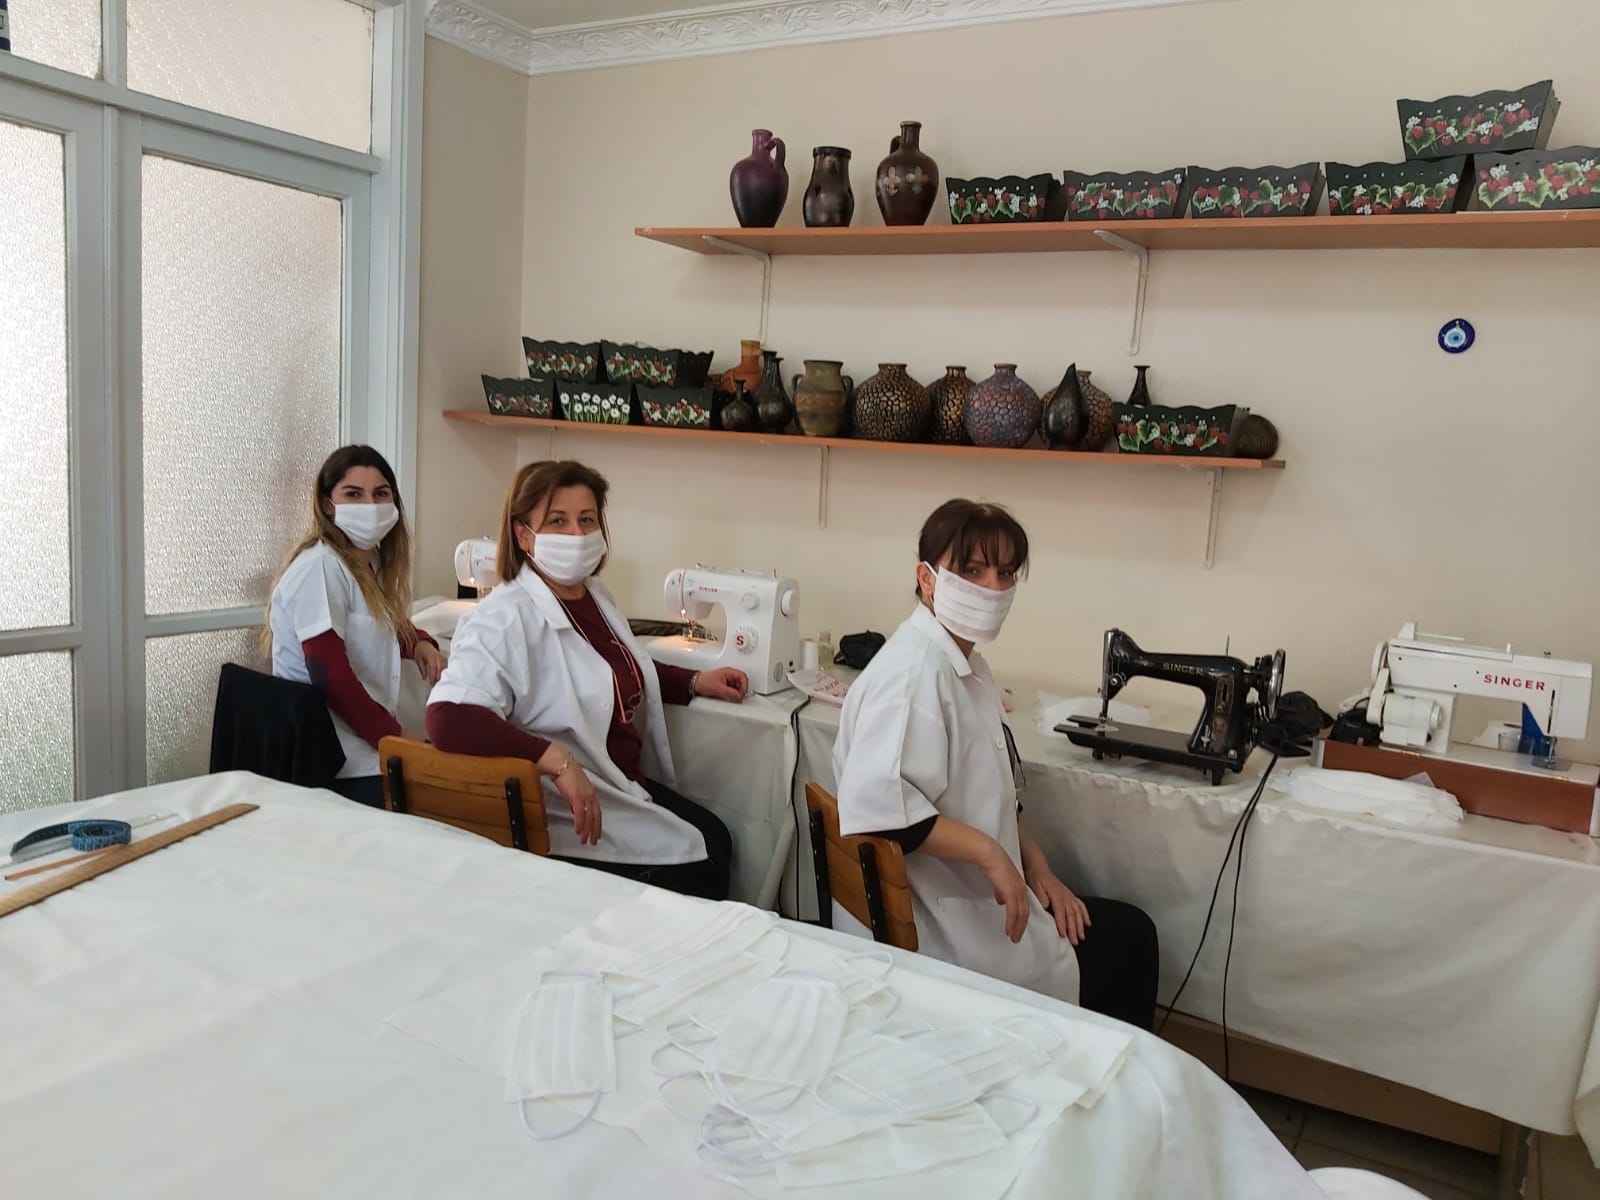 Menemen Belediyesi Koronavirüs’le mücadele kapsamında maske üretimine başladı